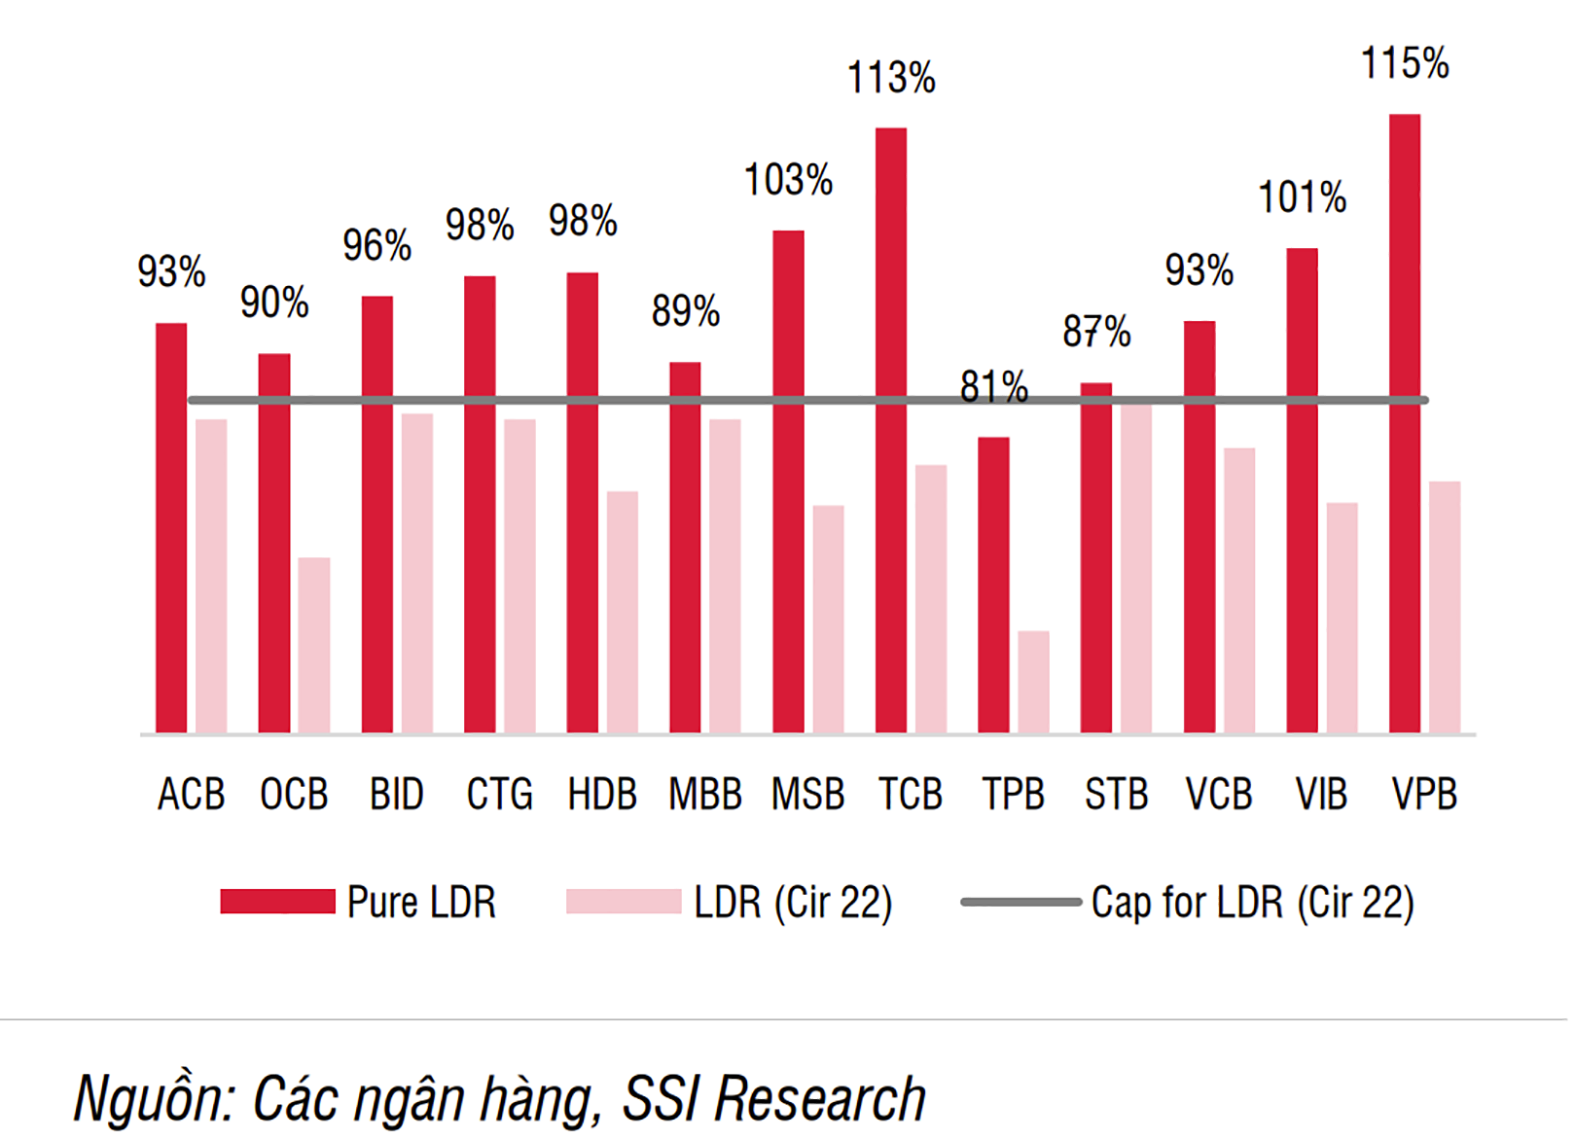  Tỷ lệ cho vay trên huy động (LDR) của một số ngân hàngp/thương mại. Nguồn: Các ngân hàng, SSI Research